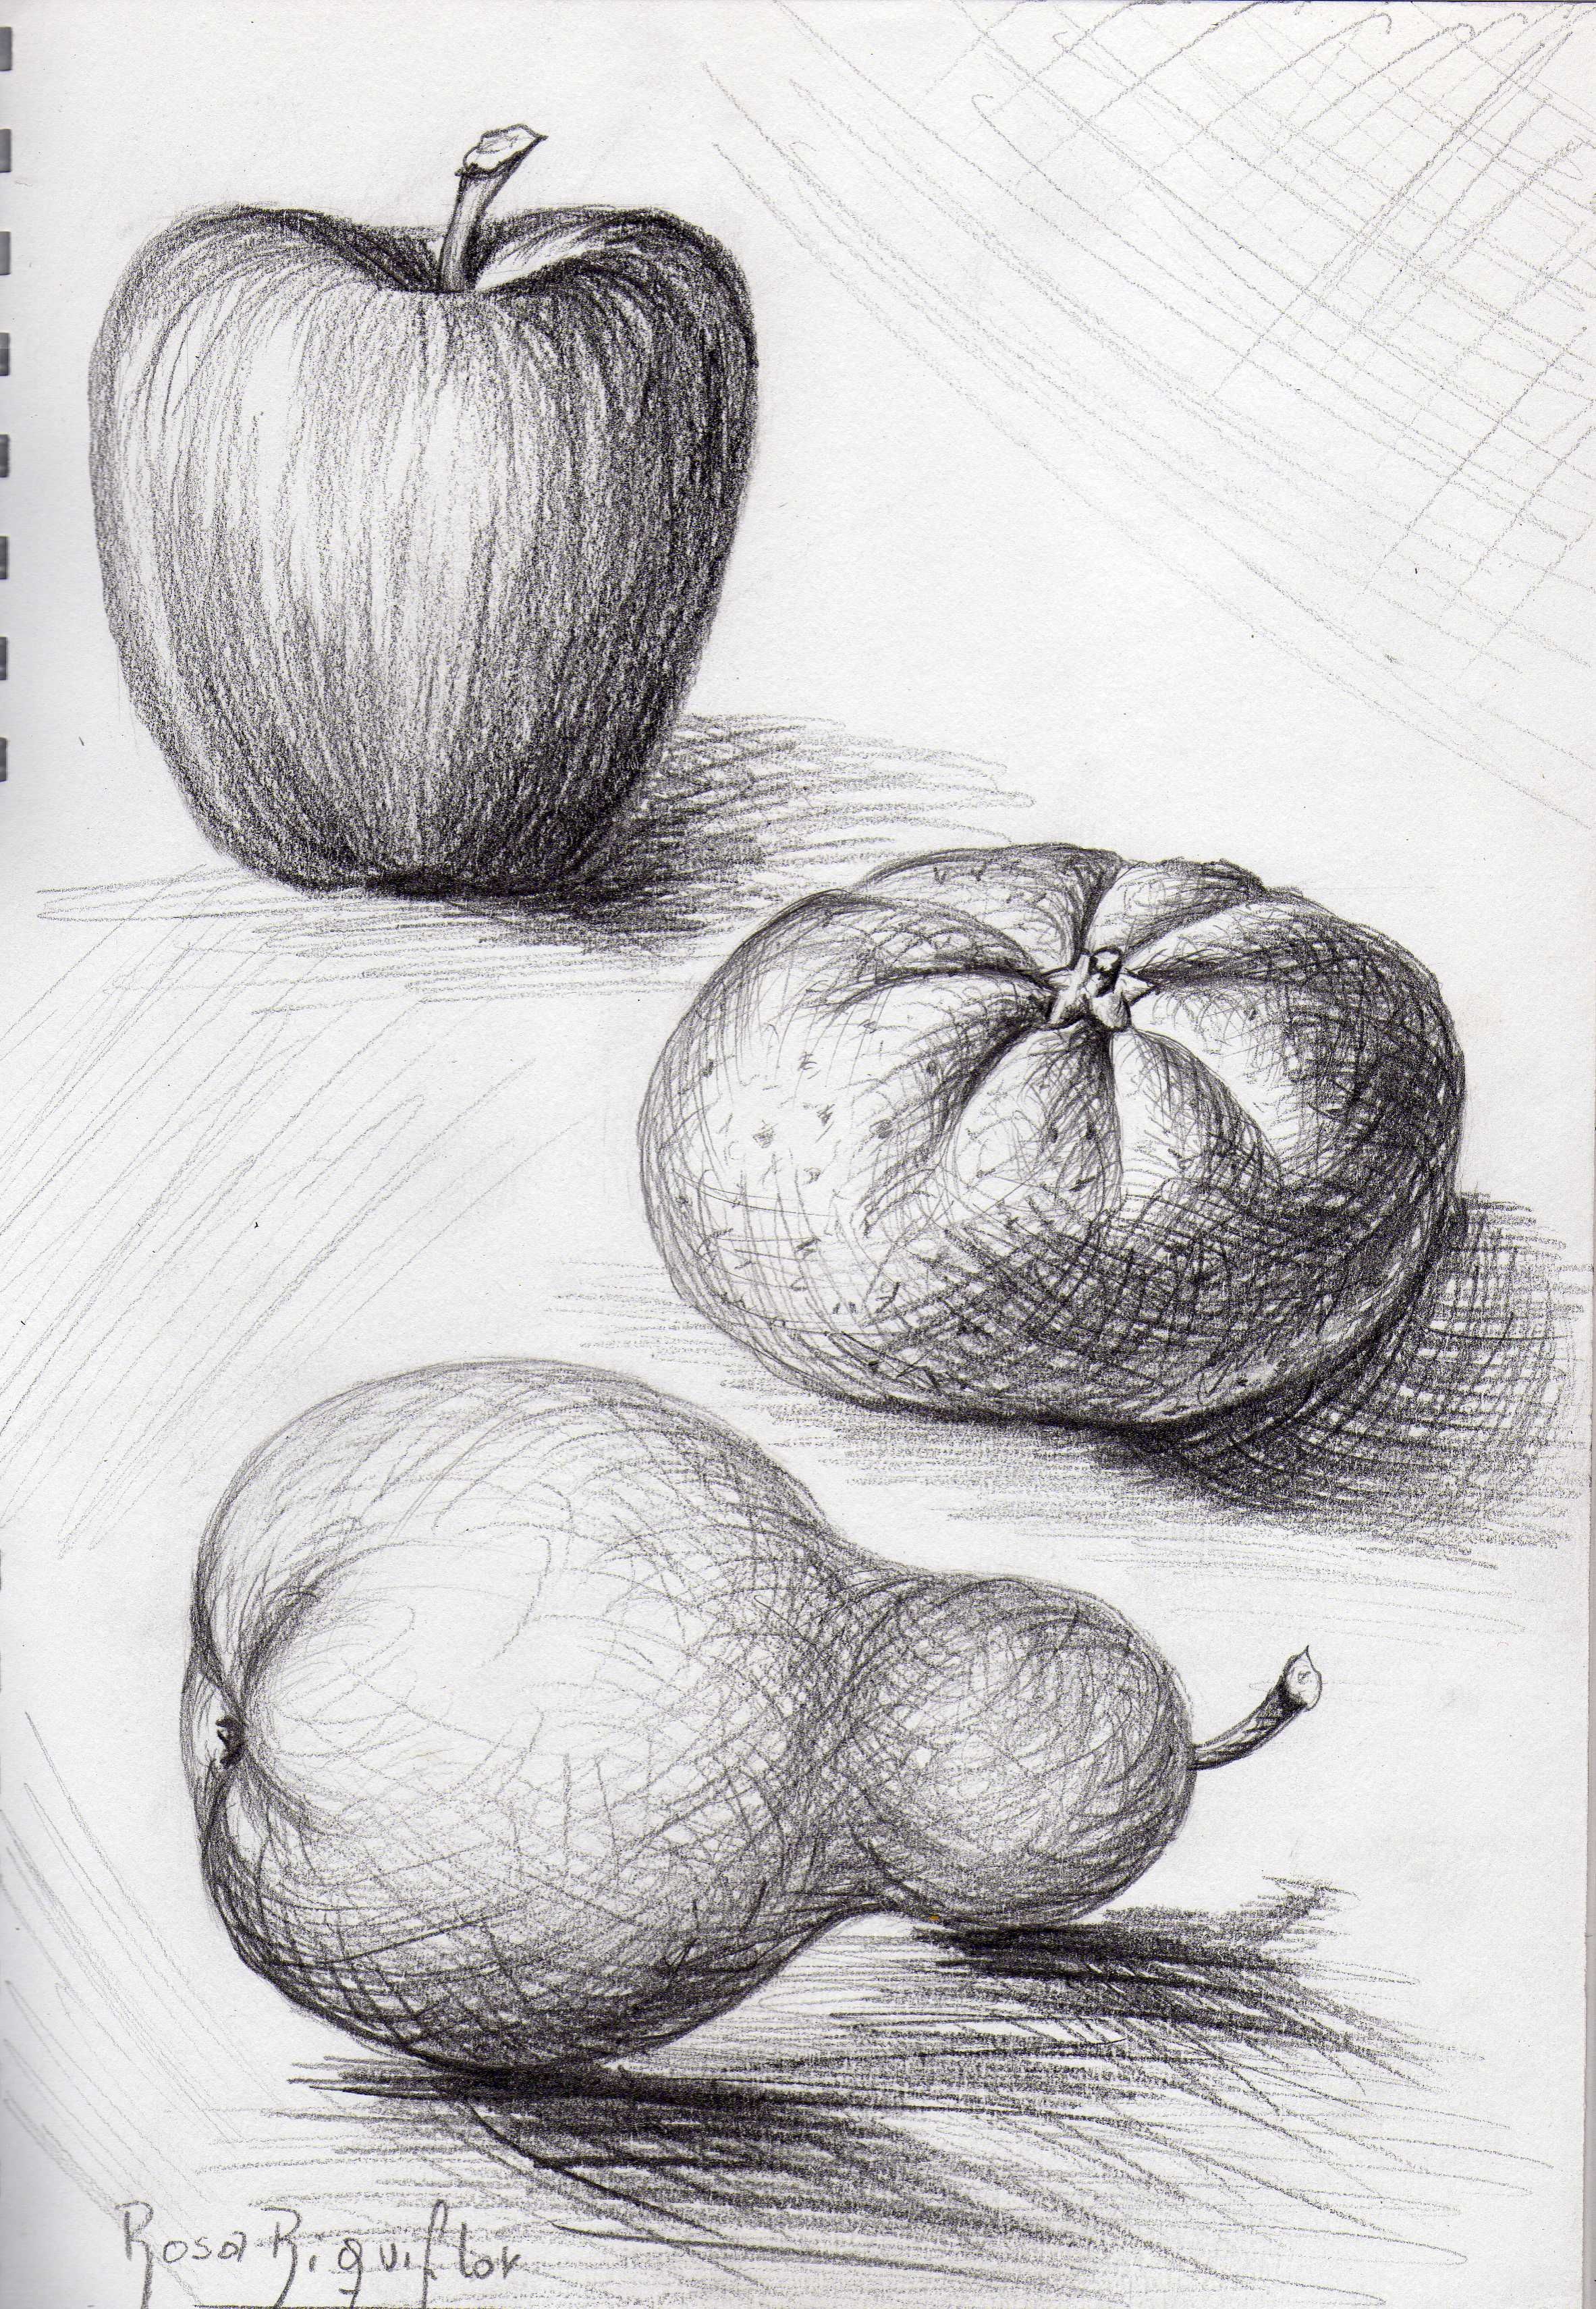 DIBUJO DE FRUTAS A LÁPIZ | Dibujos de frutas, Gelatinas de minions, Disenos  de unas